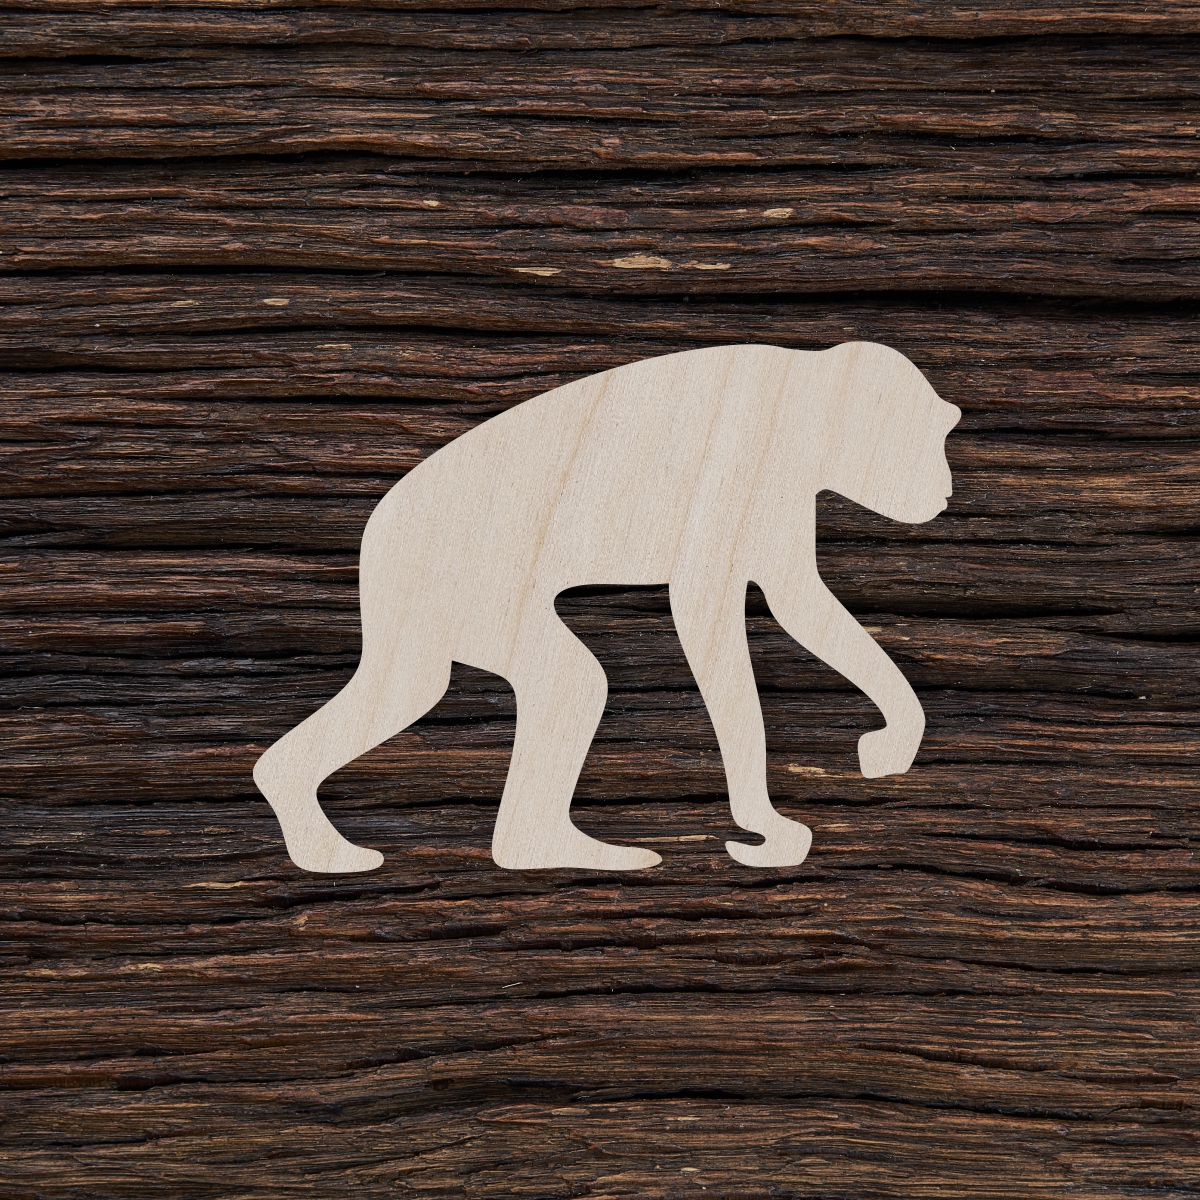 šimpanzė - medinis gaminys, pjautas lazeriu - dekoravimui ir dažymui 